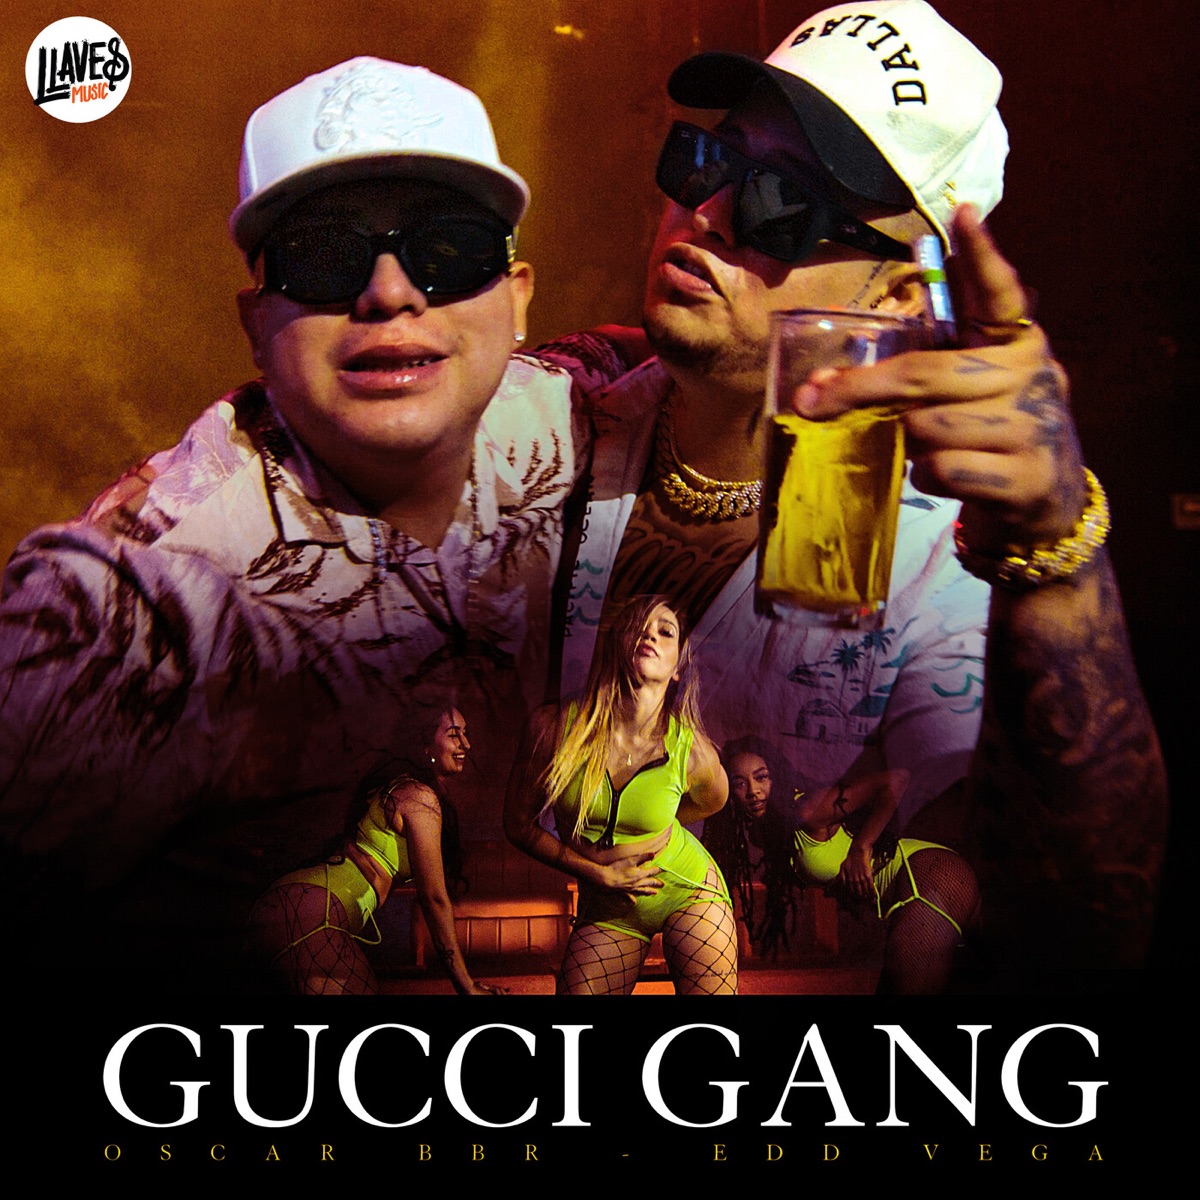 Gucci Gang - Single - Album by Oscar BBR & Edd vega - Apple Music